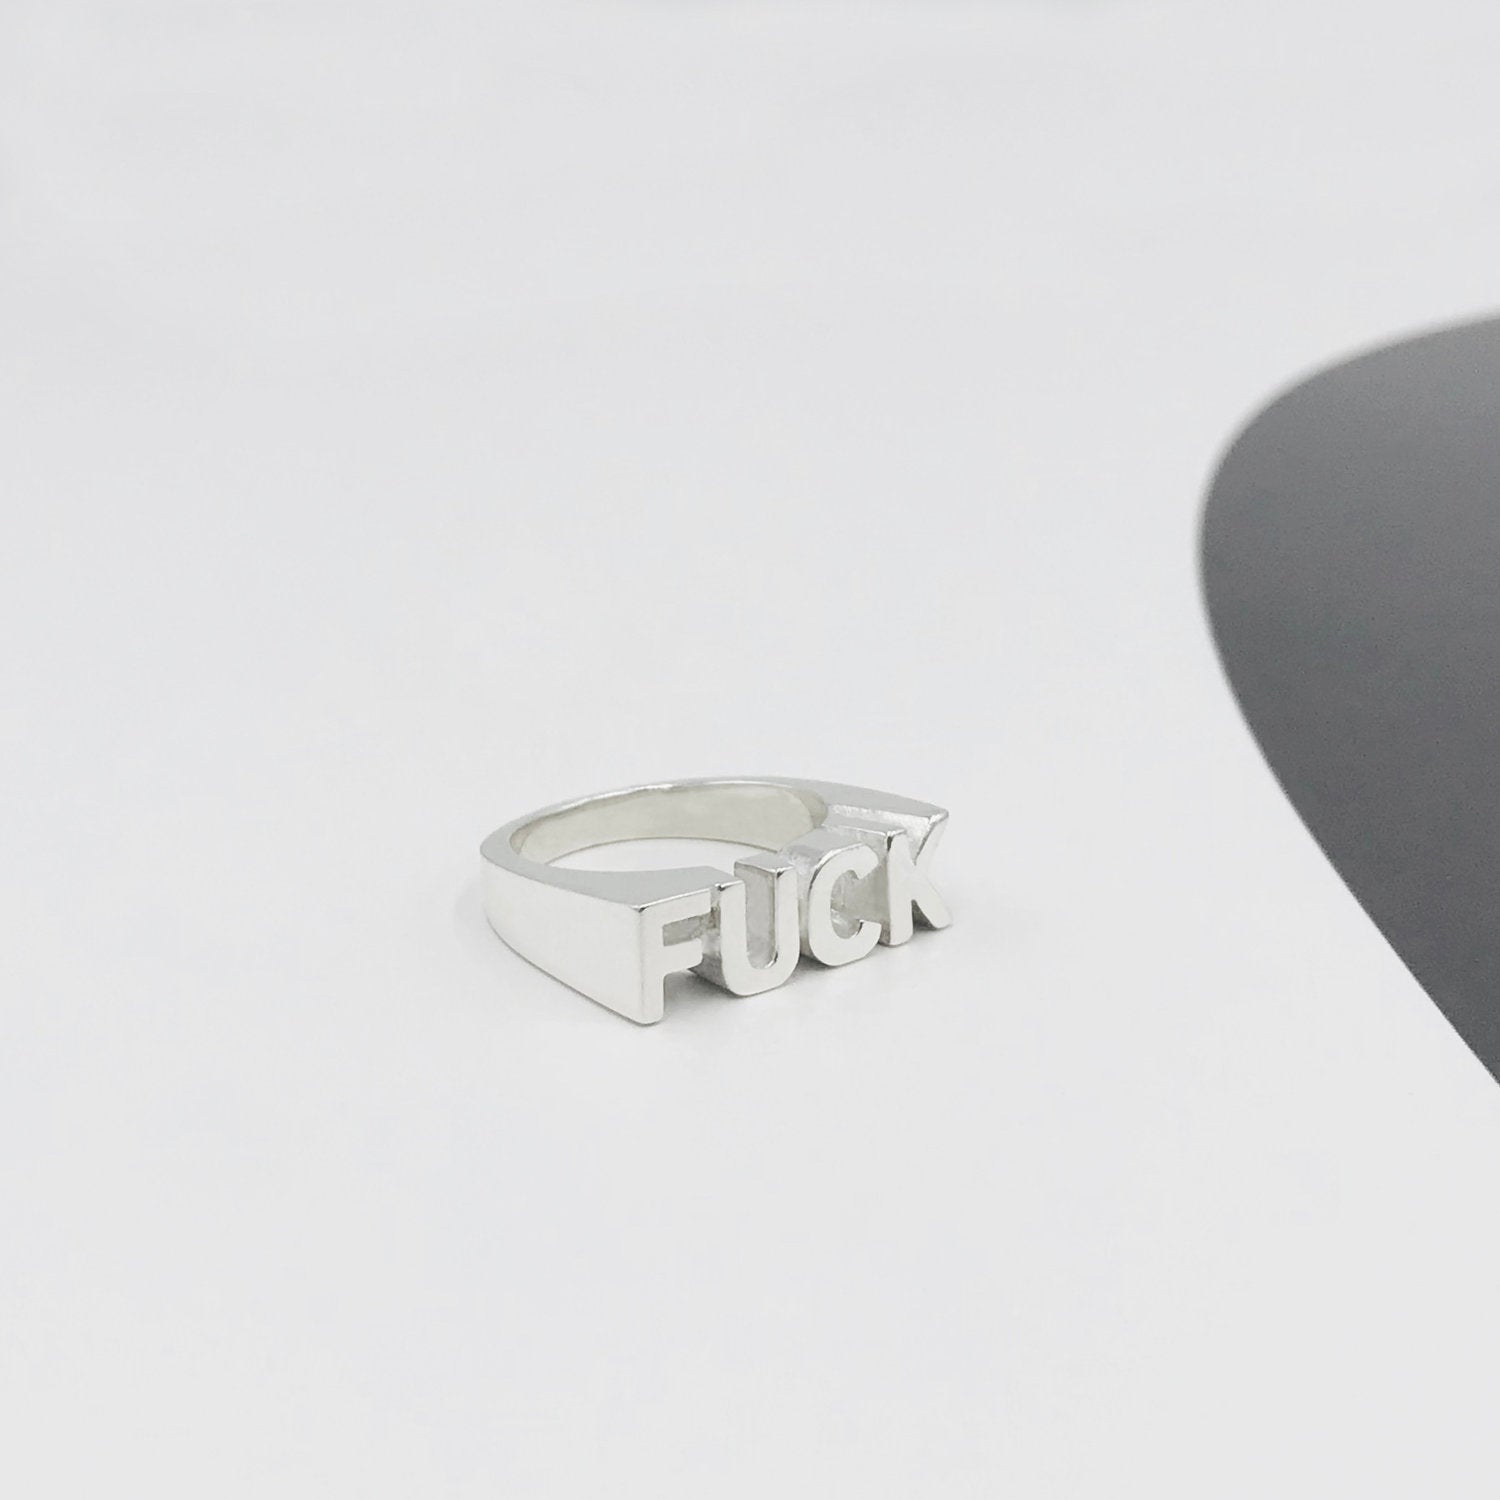 FUCK Ring